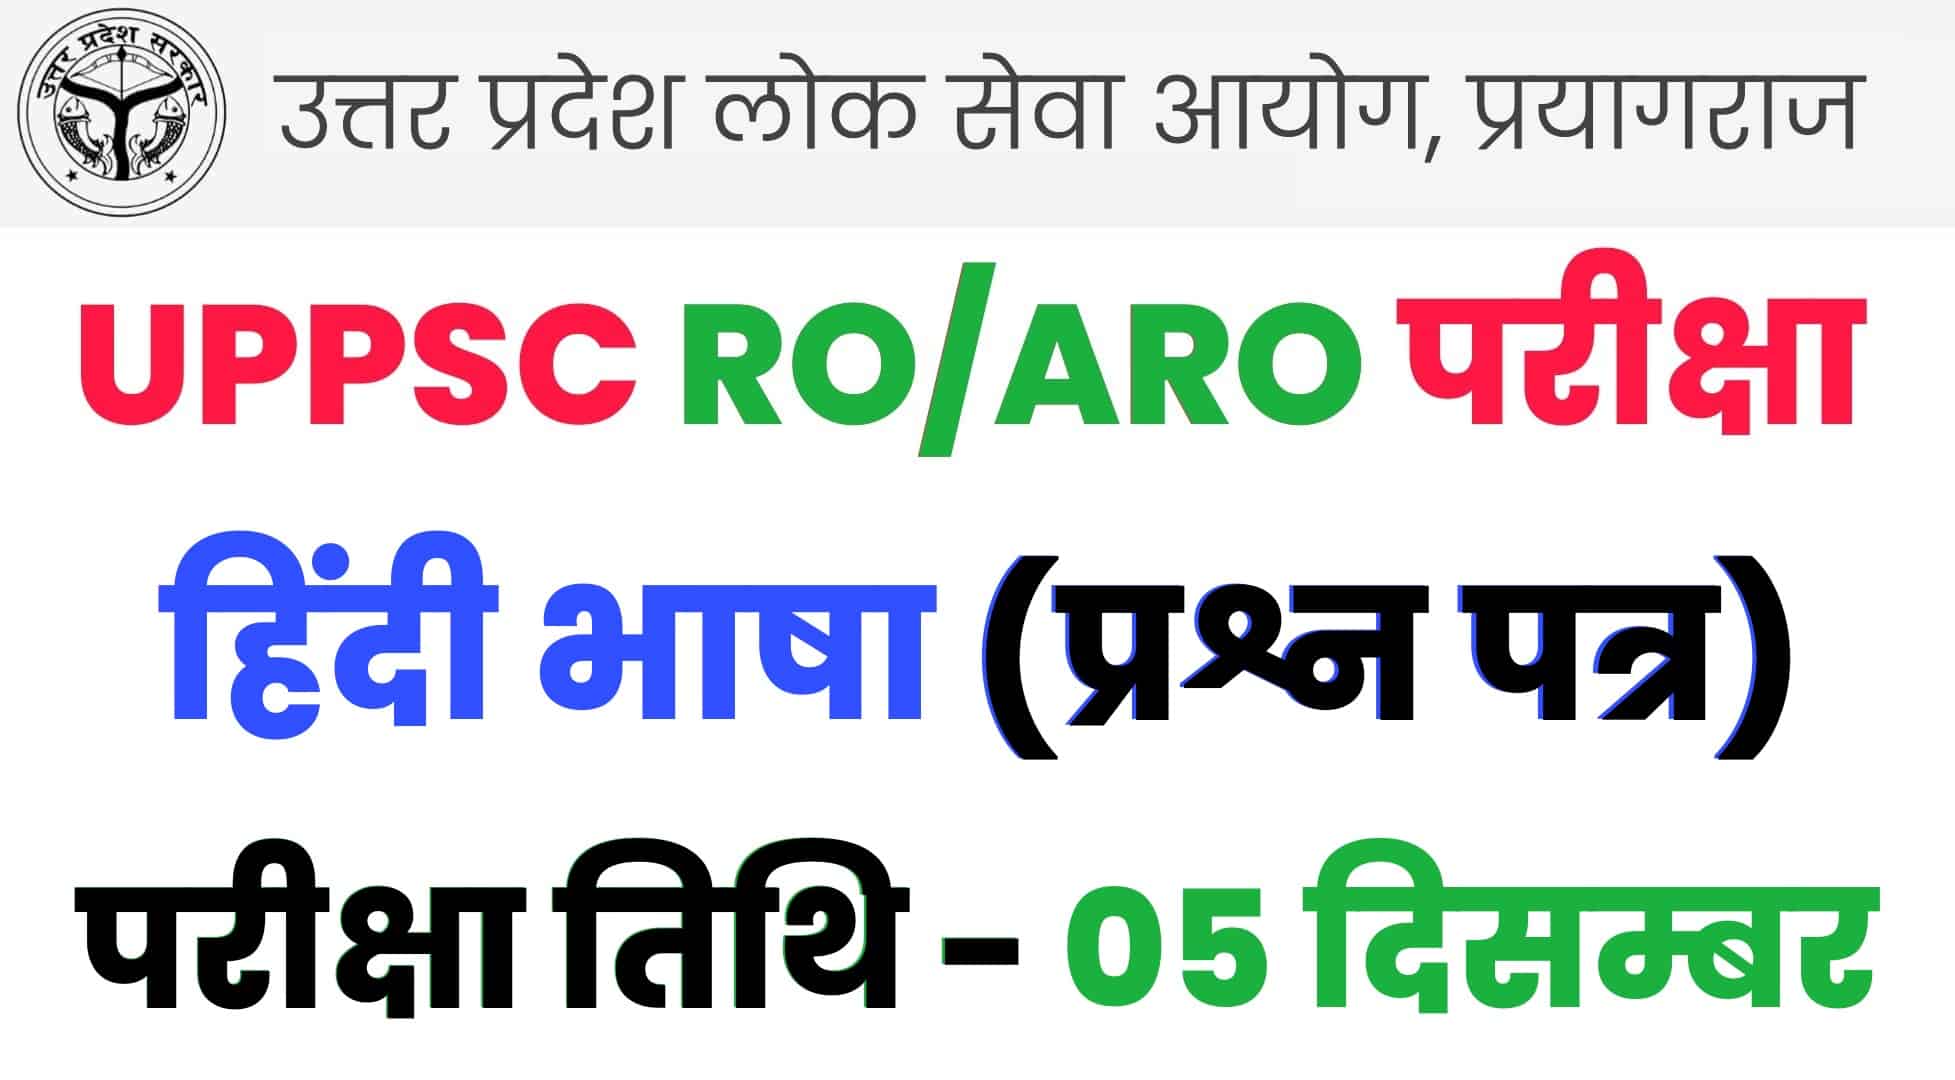 UPPSC RO/ARO हिंदी भाषा प्रश्न पत्र : कल की परीक्षा में पूछे गये थे ऐसे प्रश्न, जरुर देखें